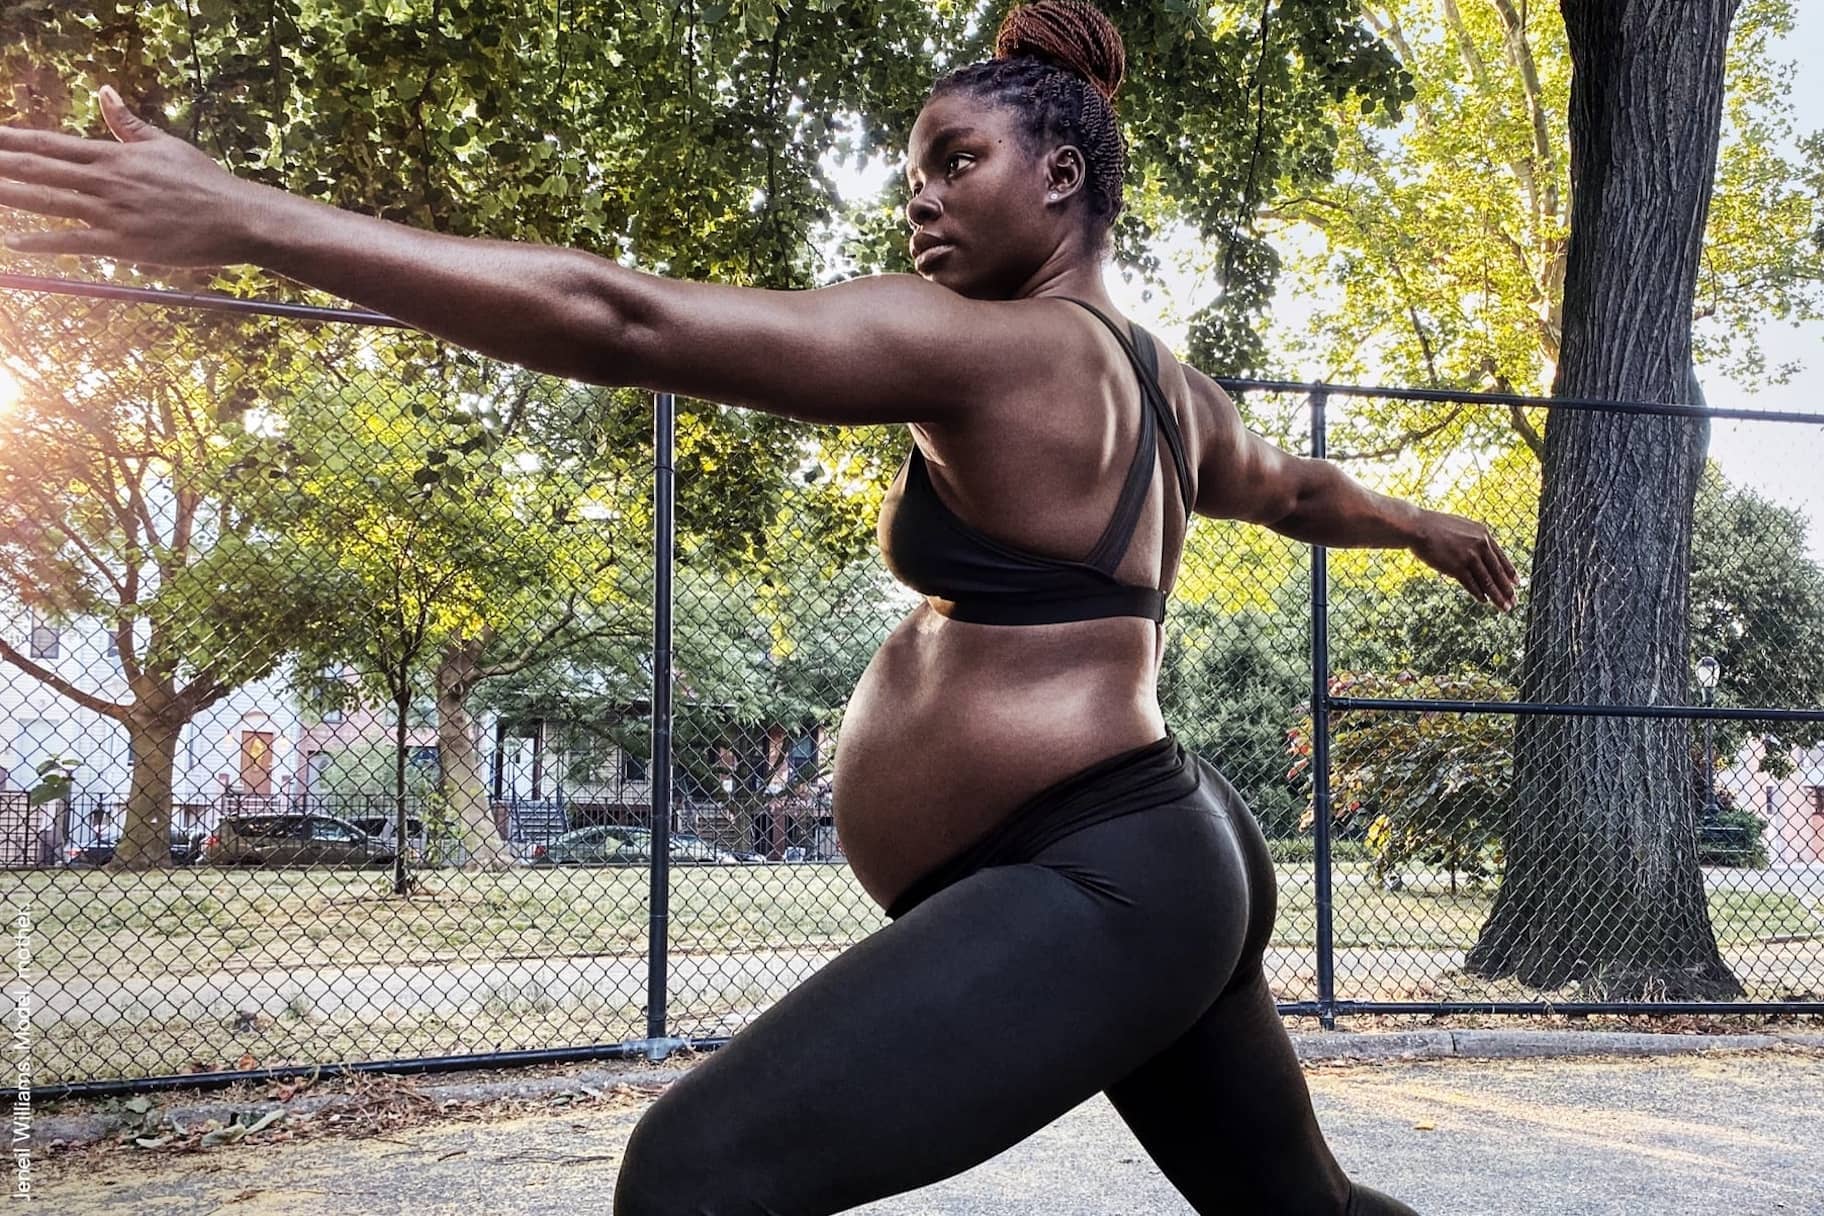 Bijwerken herstel onvergeeflijk Welke sportkleding heb ik tijdens en na mijn zwangerschap nodig?. Nike NL